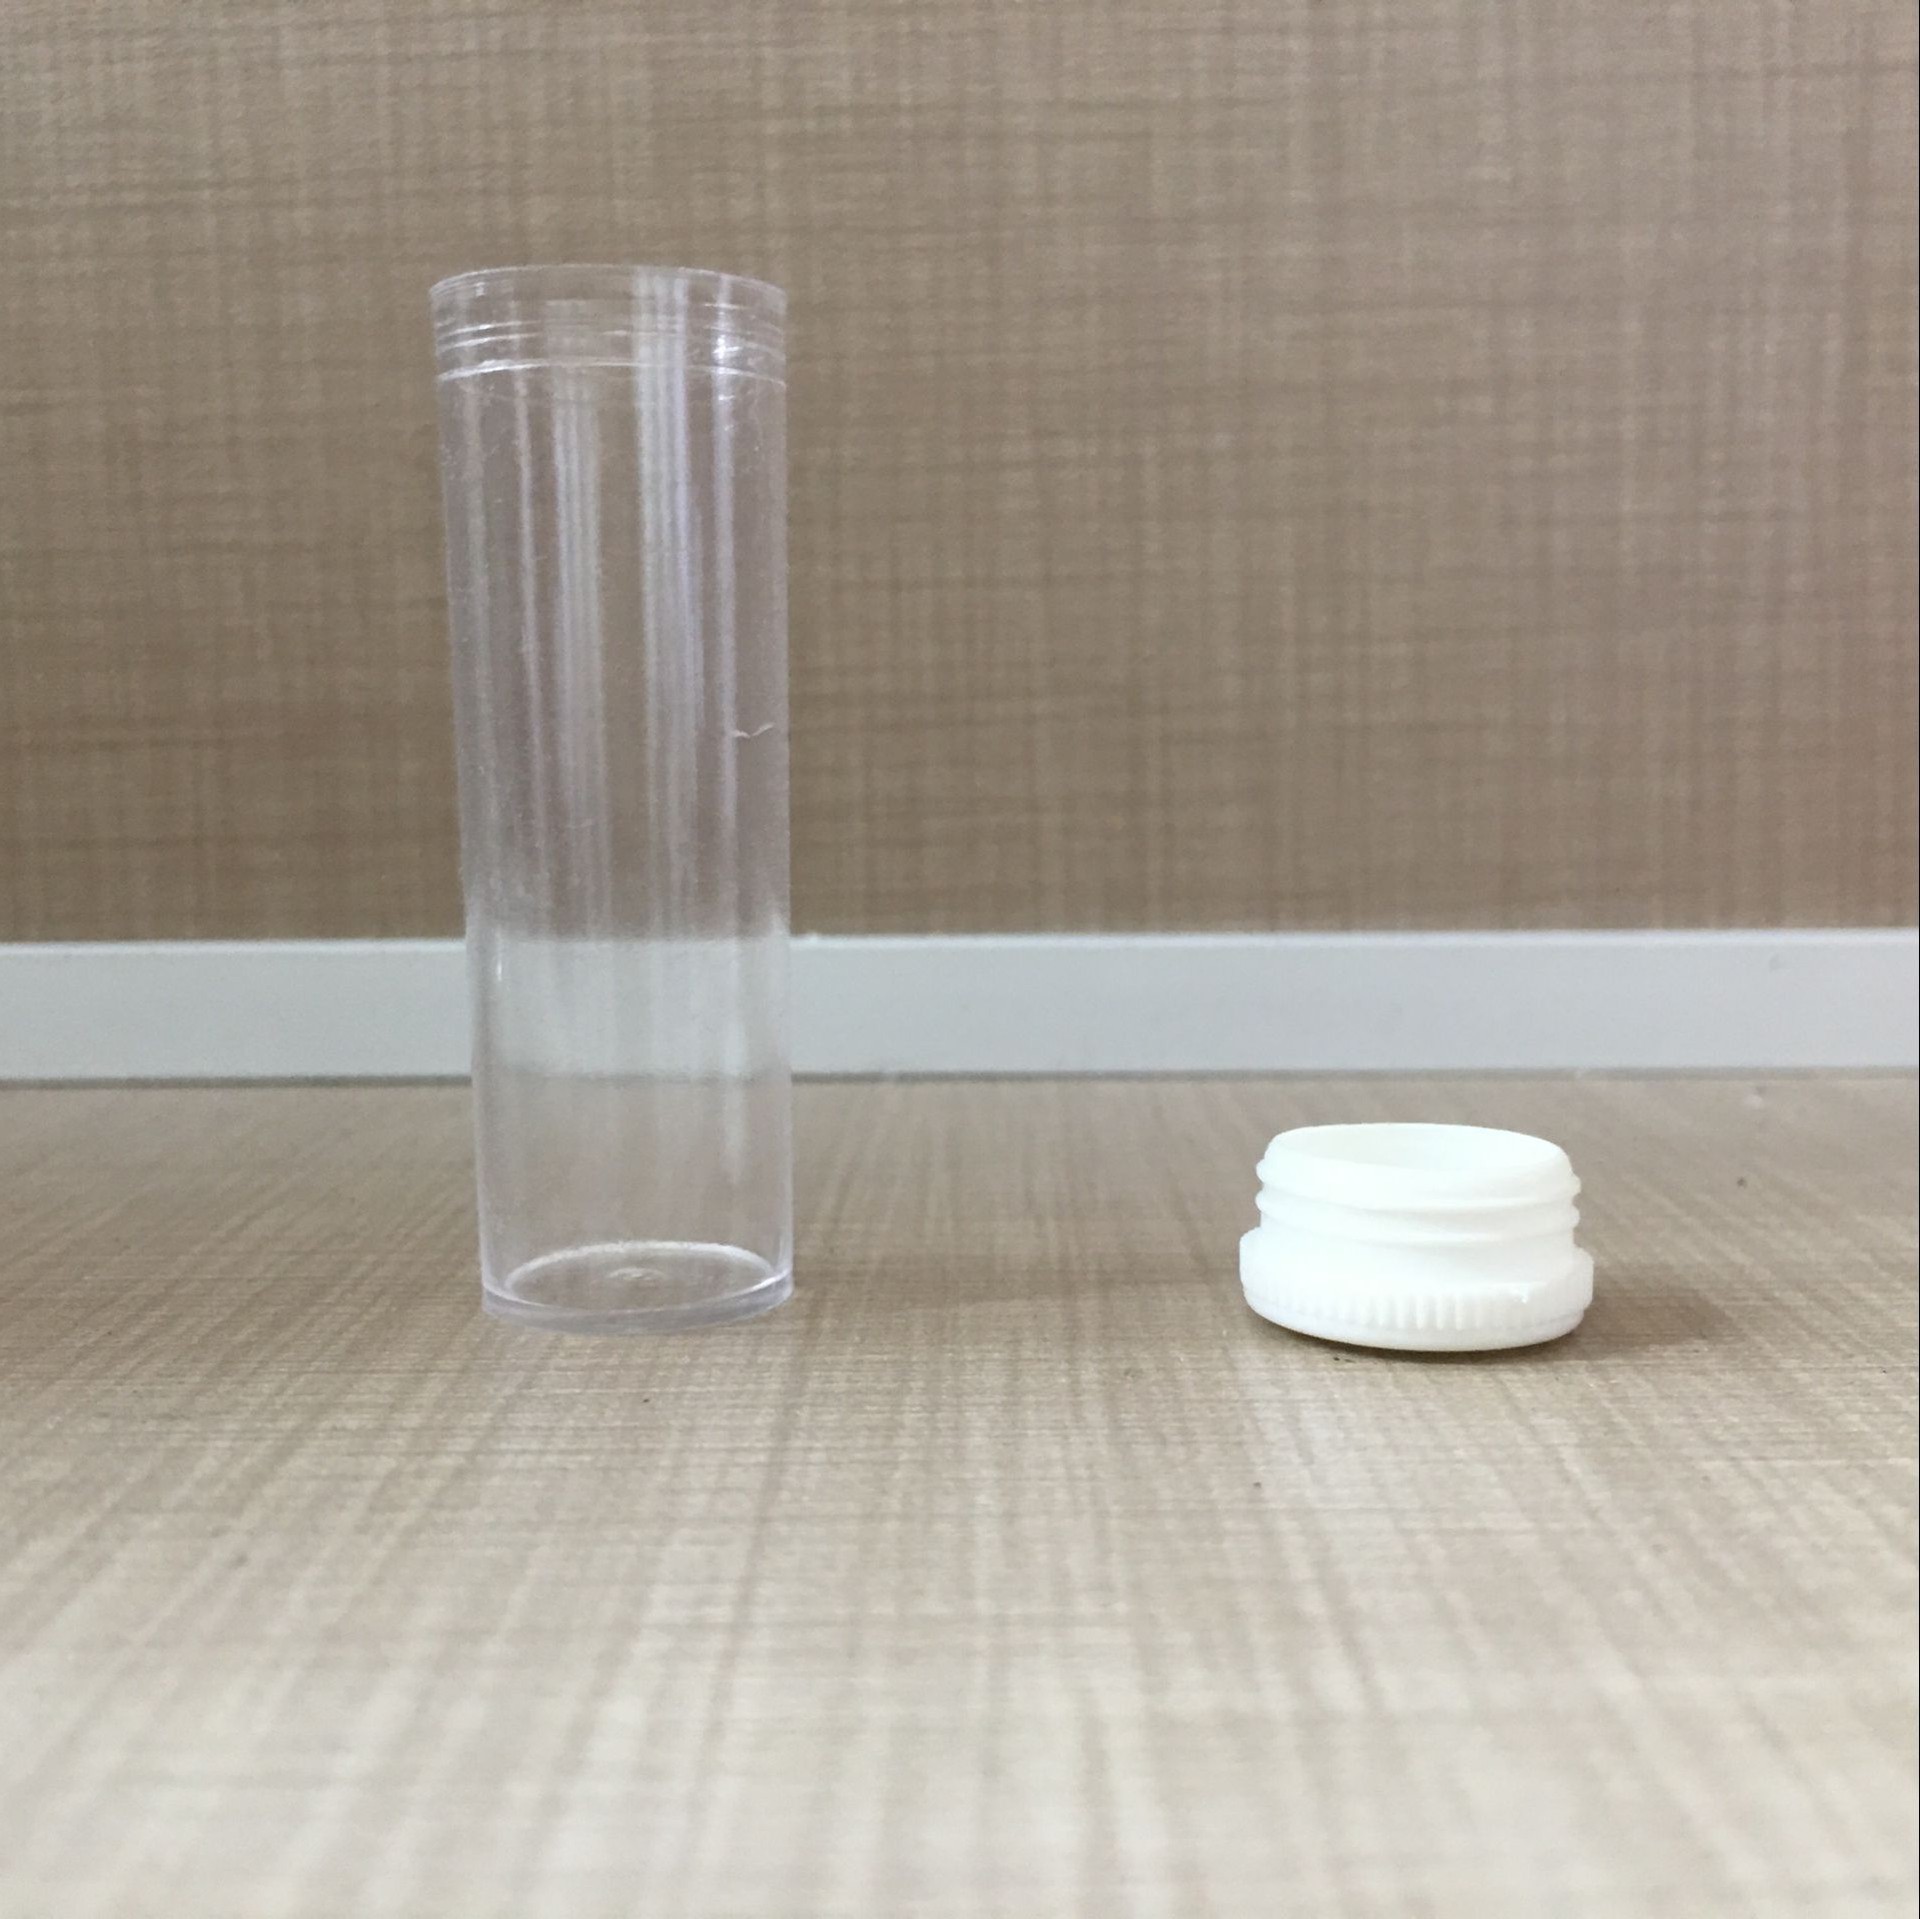 厂家直销2g药管塑料管透明塑料管医用塑料管现货供应示例图6